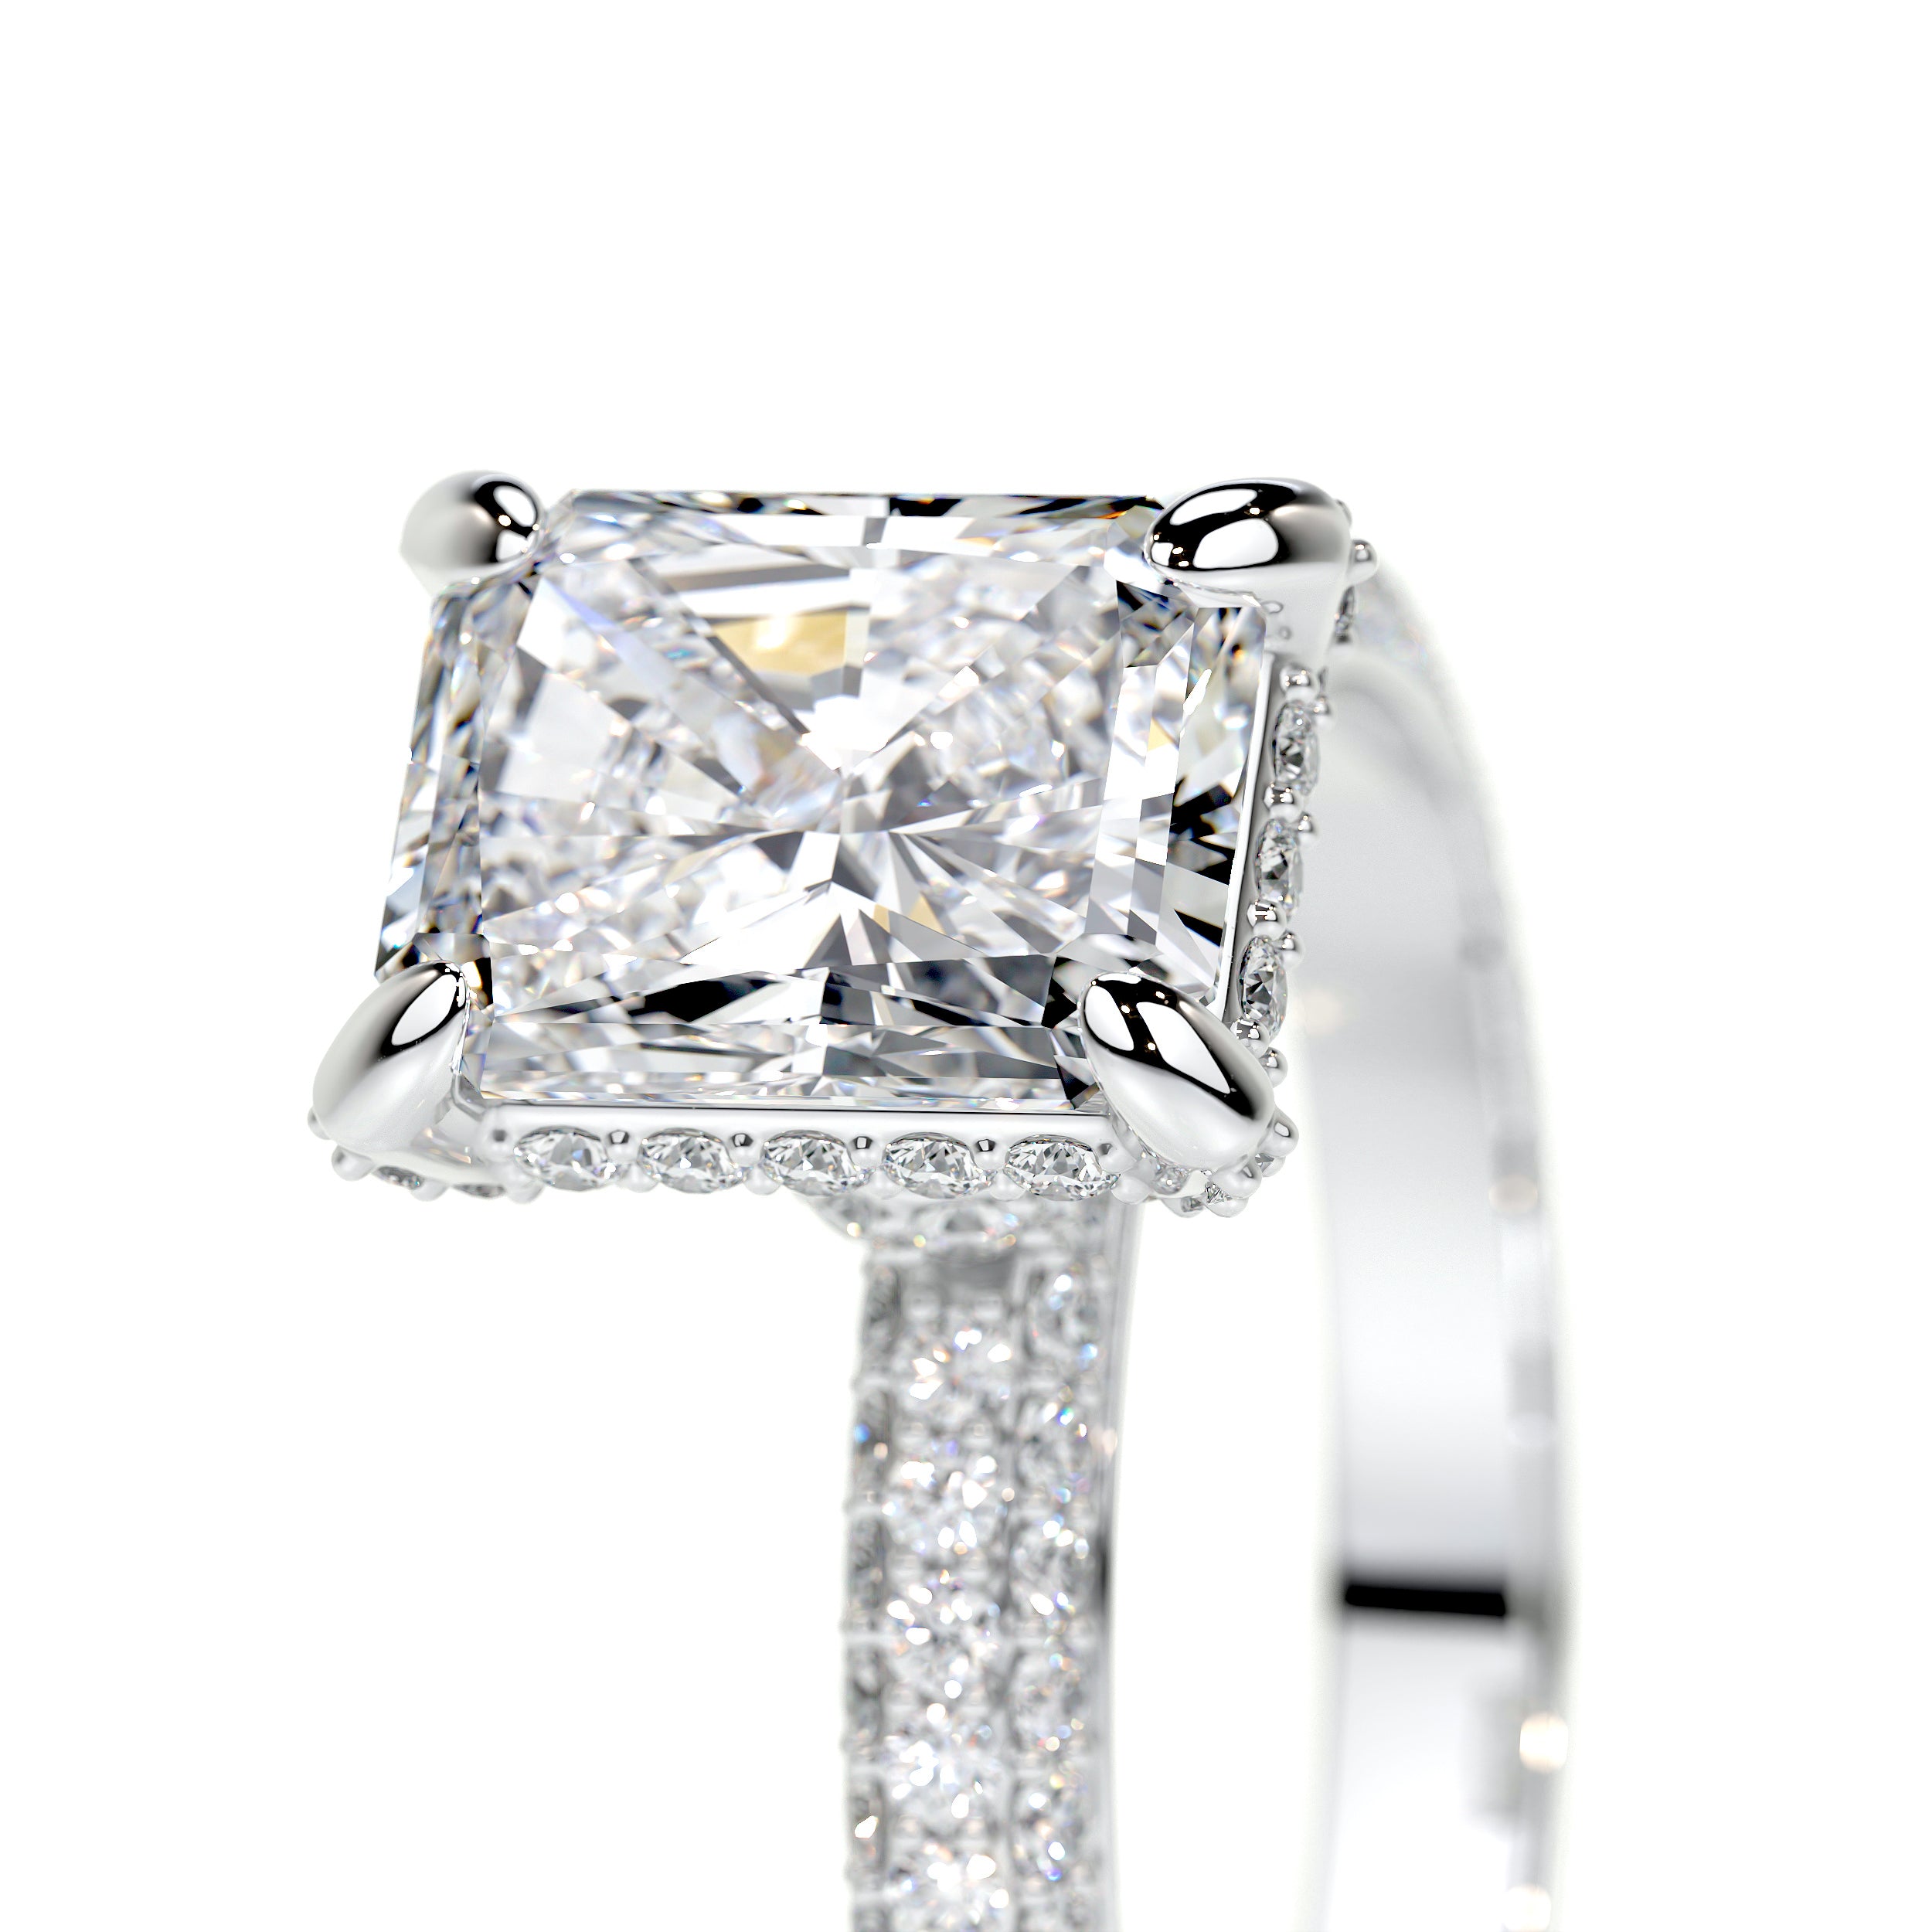 Milly Lab Grown Diamond Ring -14K White Gold